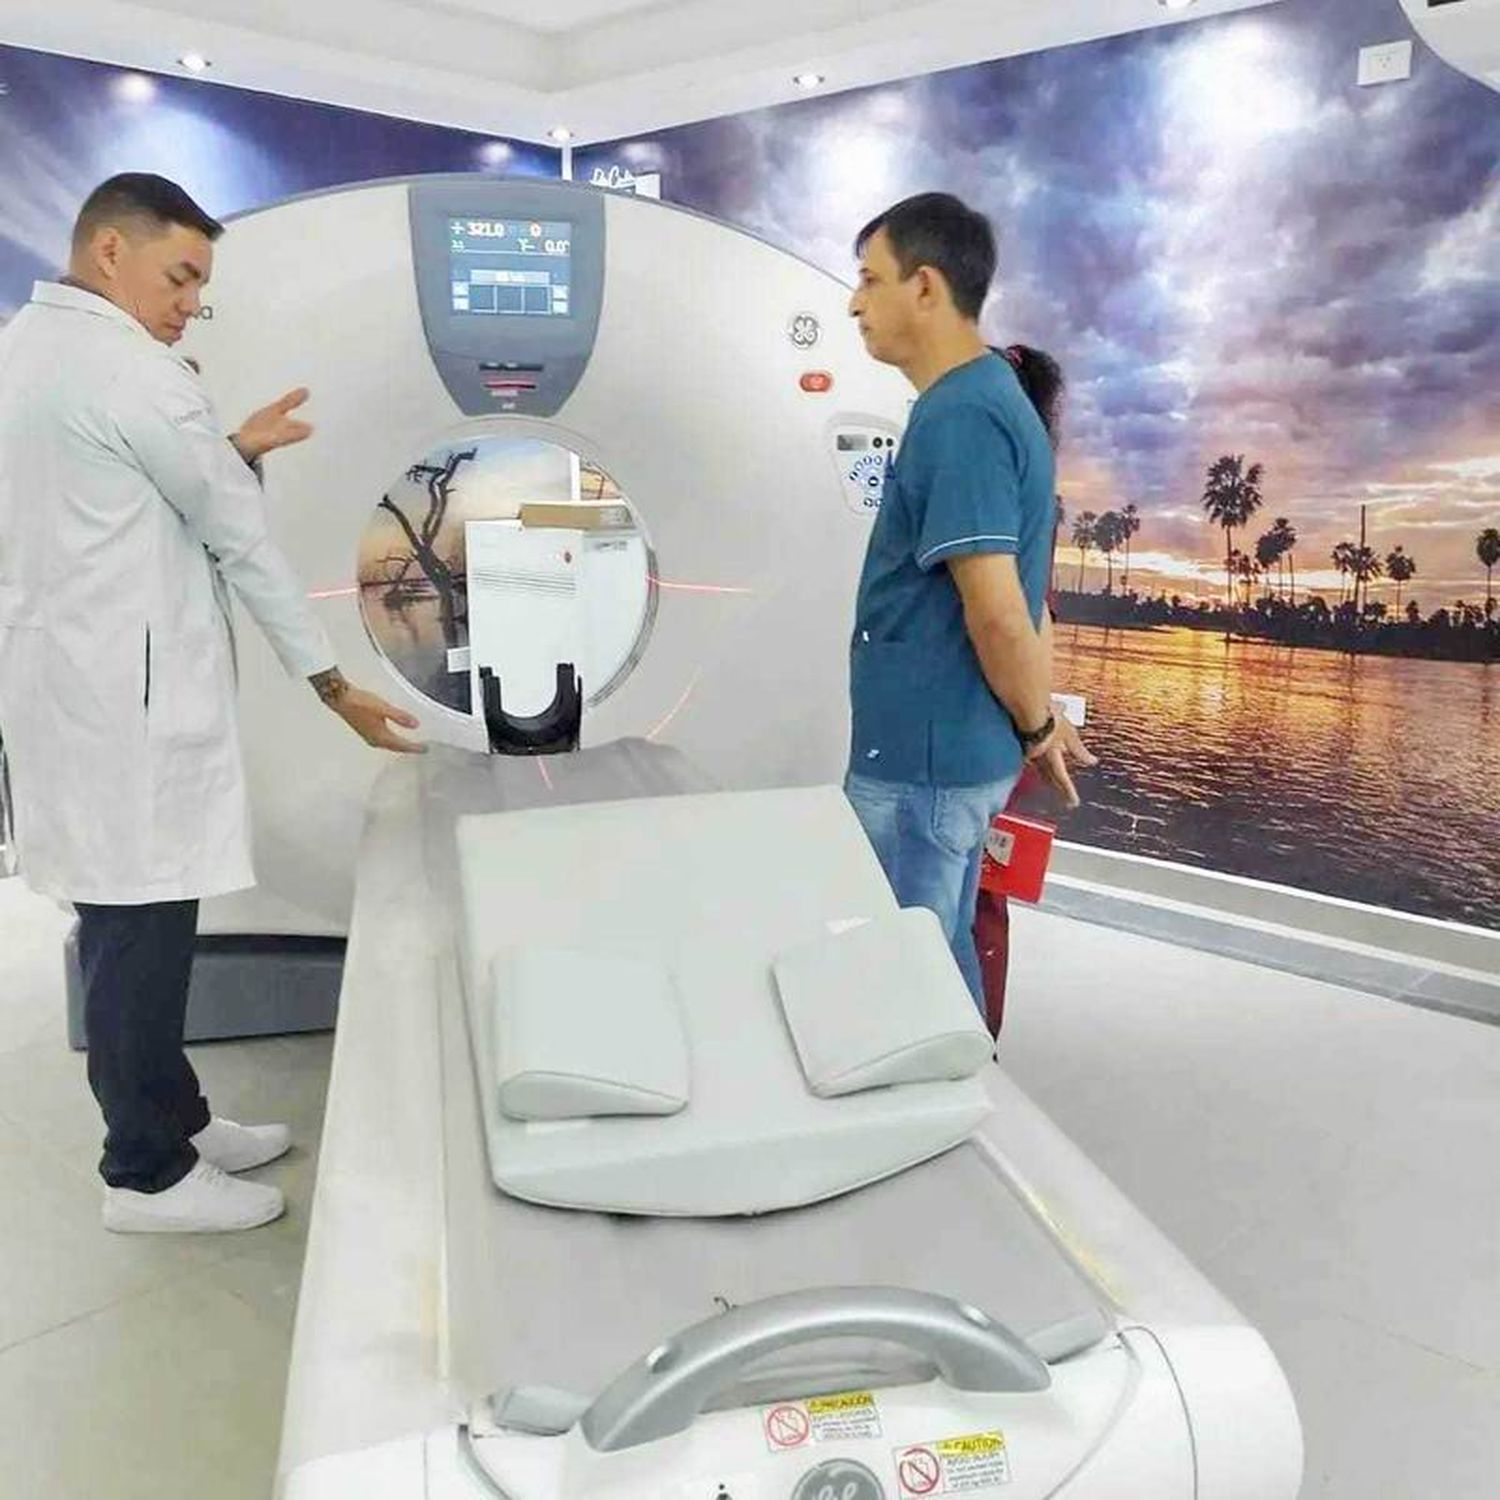 En el hospital de Ingeniero Juárez 
superaron las 1.500 tomografías realizadas